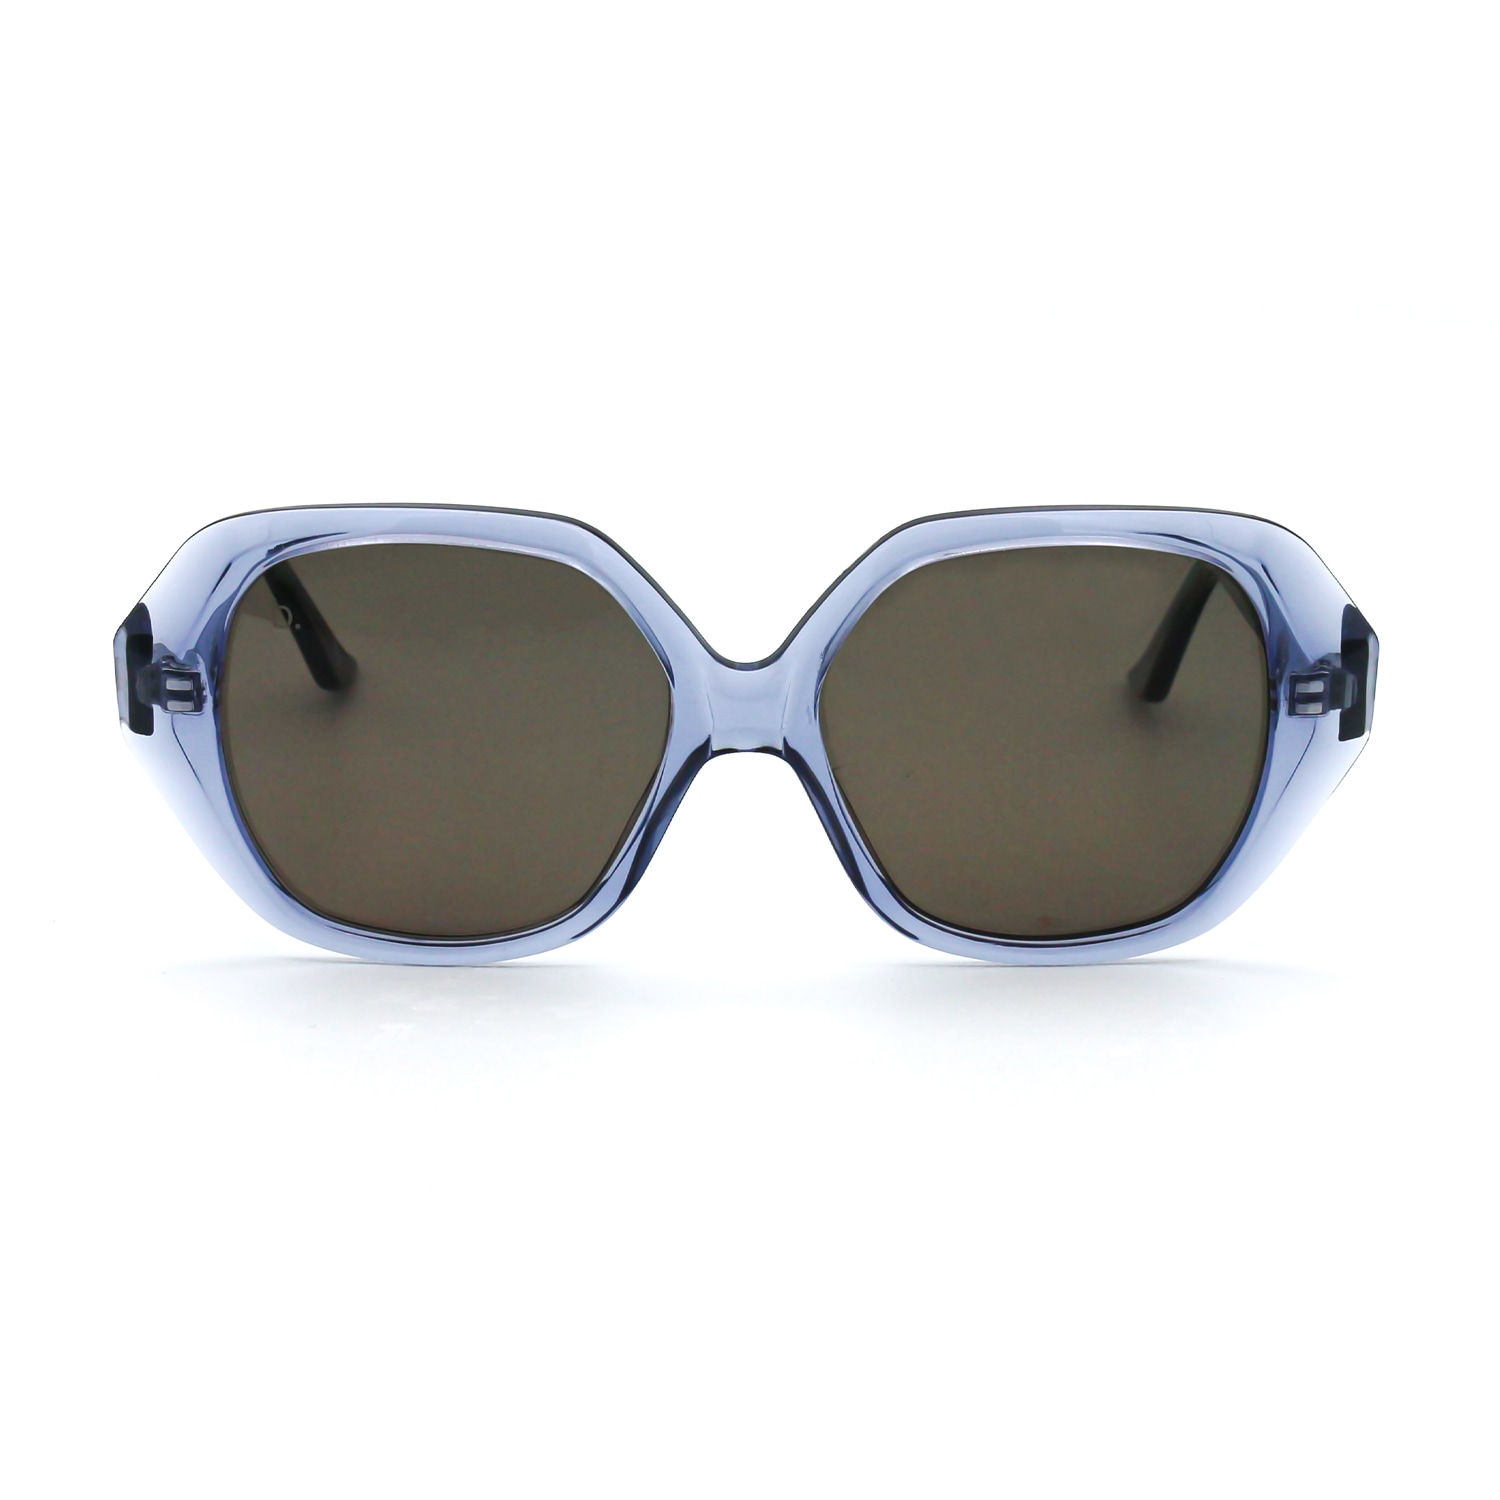 Women’s The Tybee Sunglasses In Foggy Blue One Size Brook Eyewear